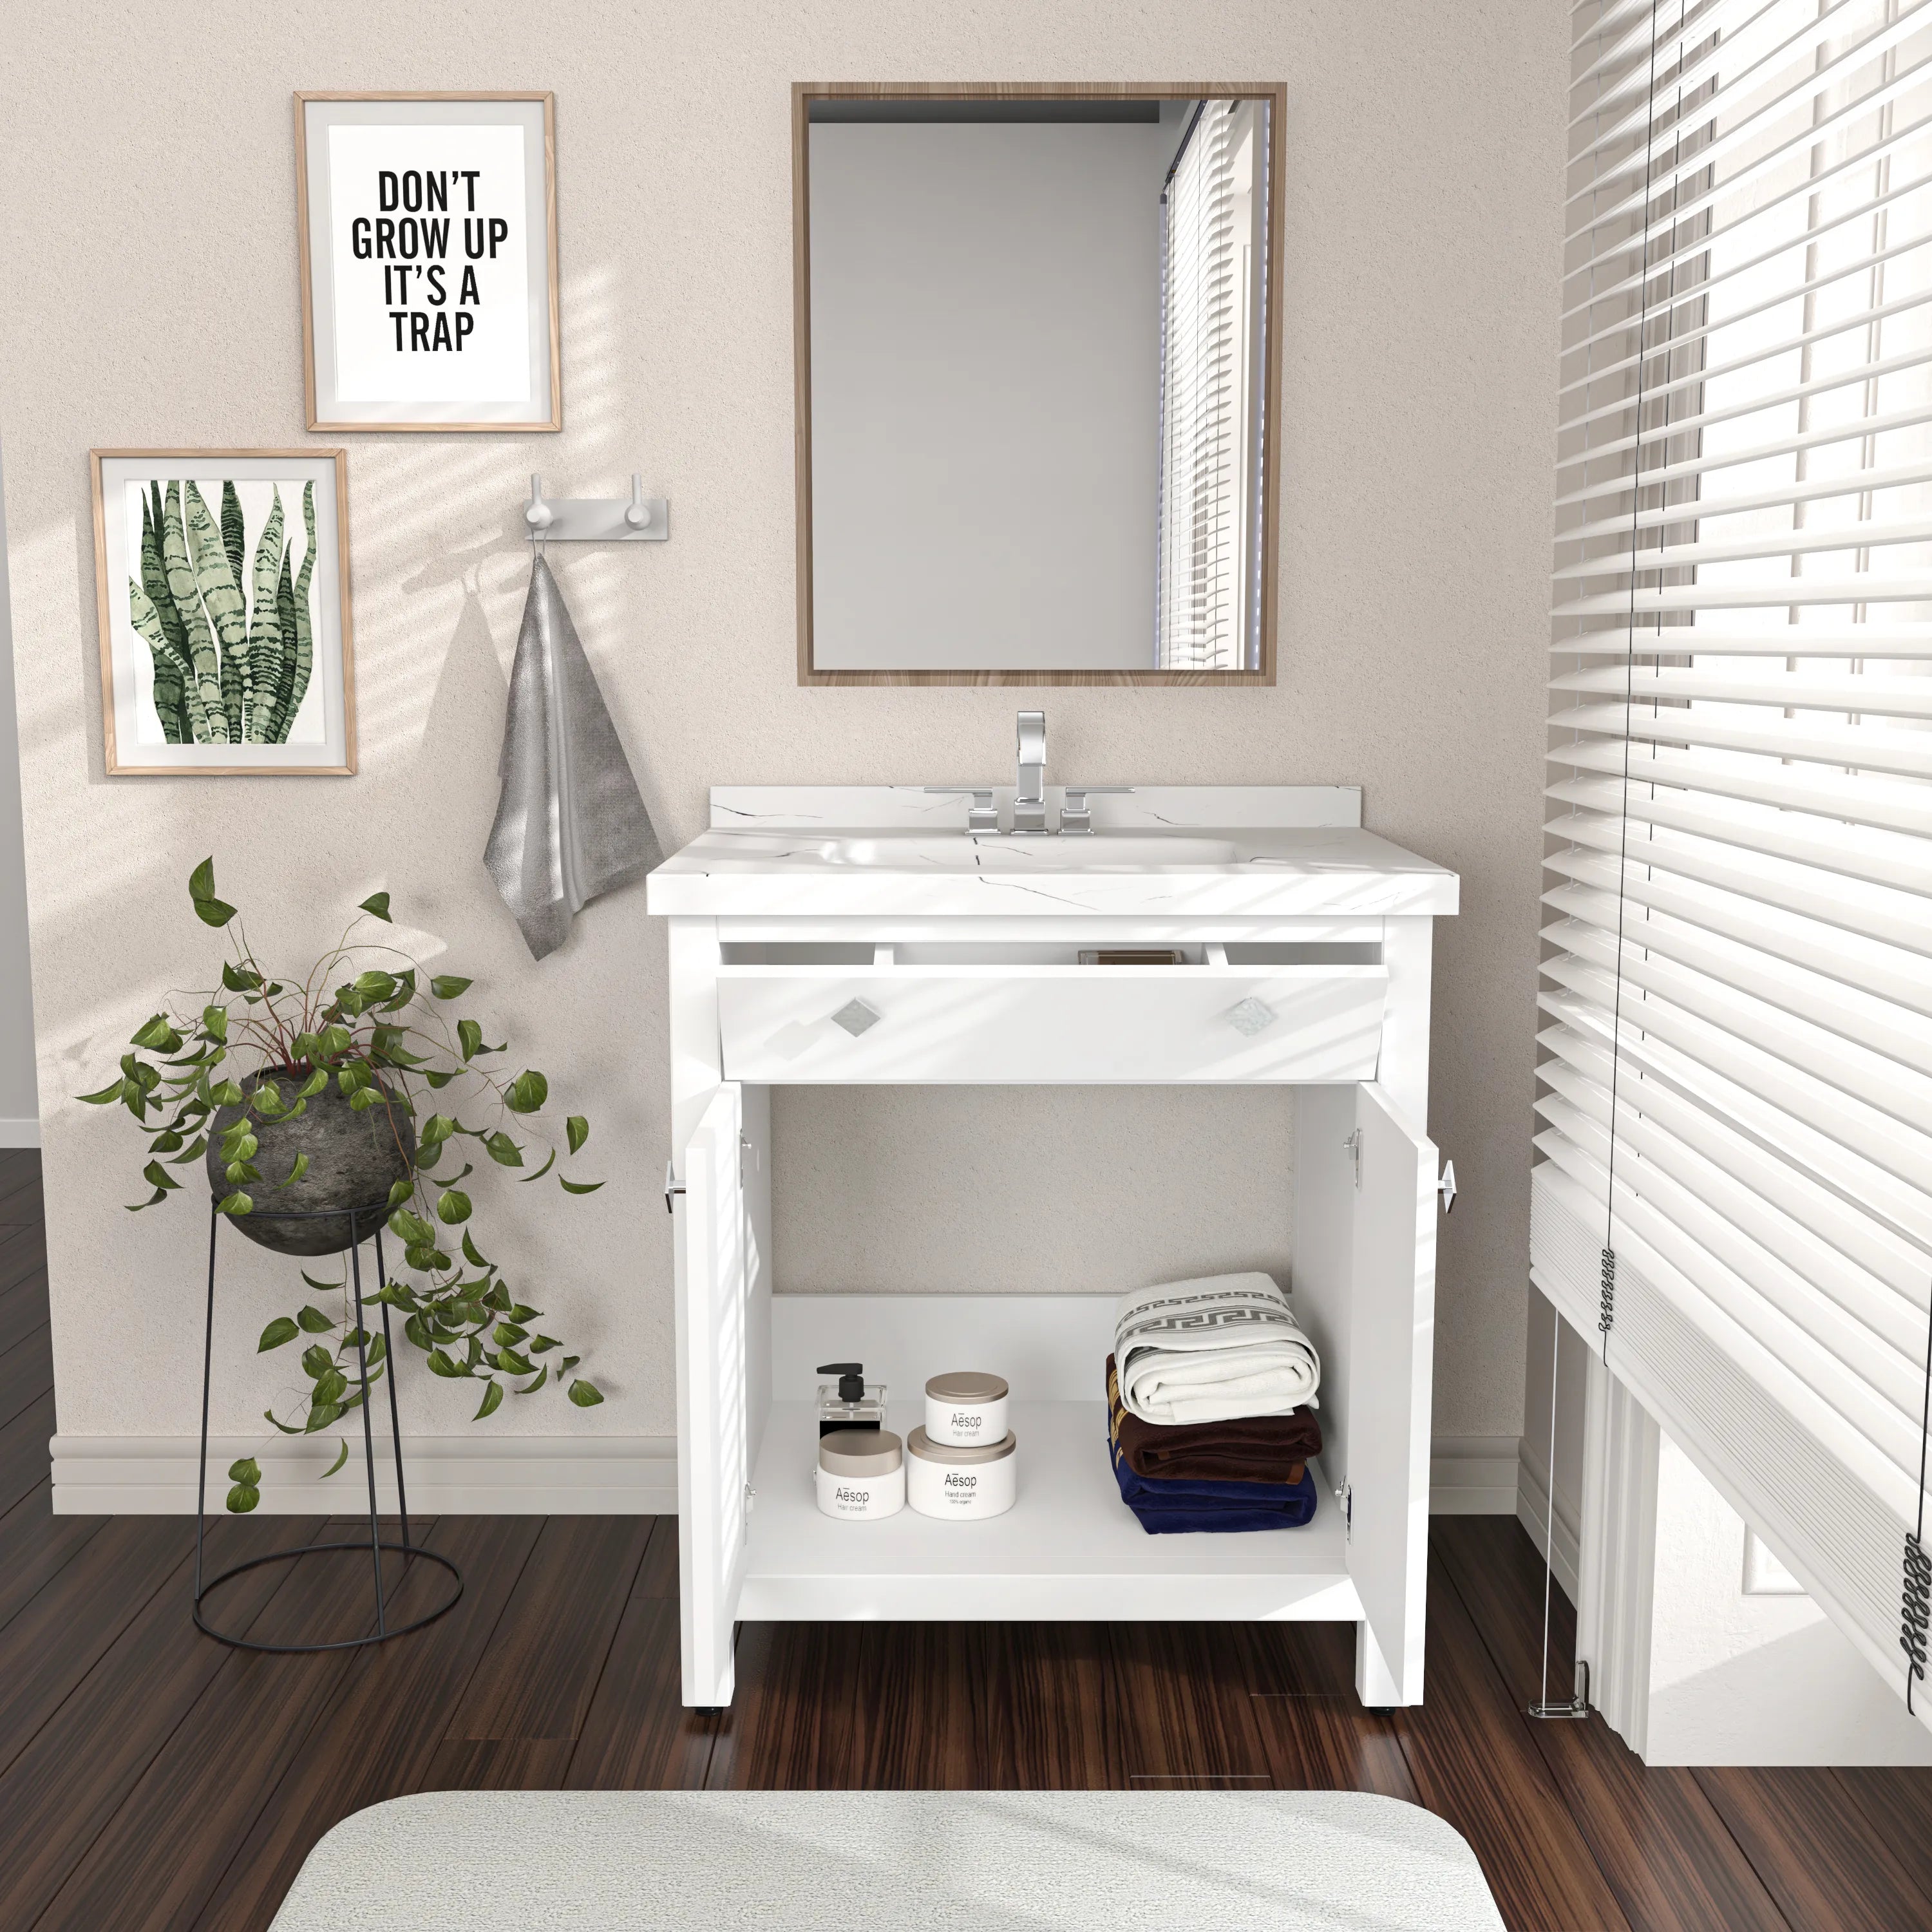 Papatya 31" Wide Free-standing Single Bathroom Vanity with Engineered Marble Vanity Top